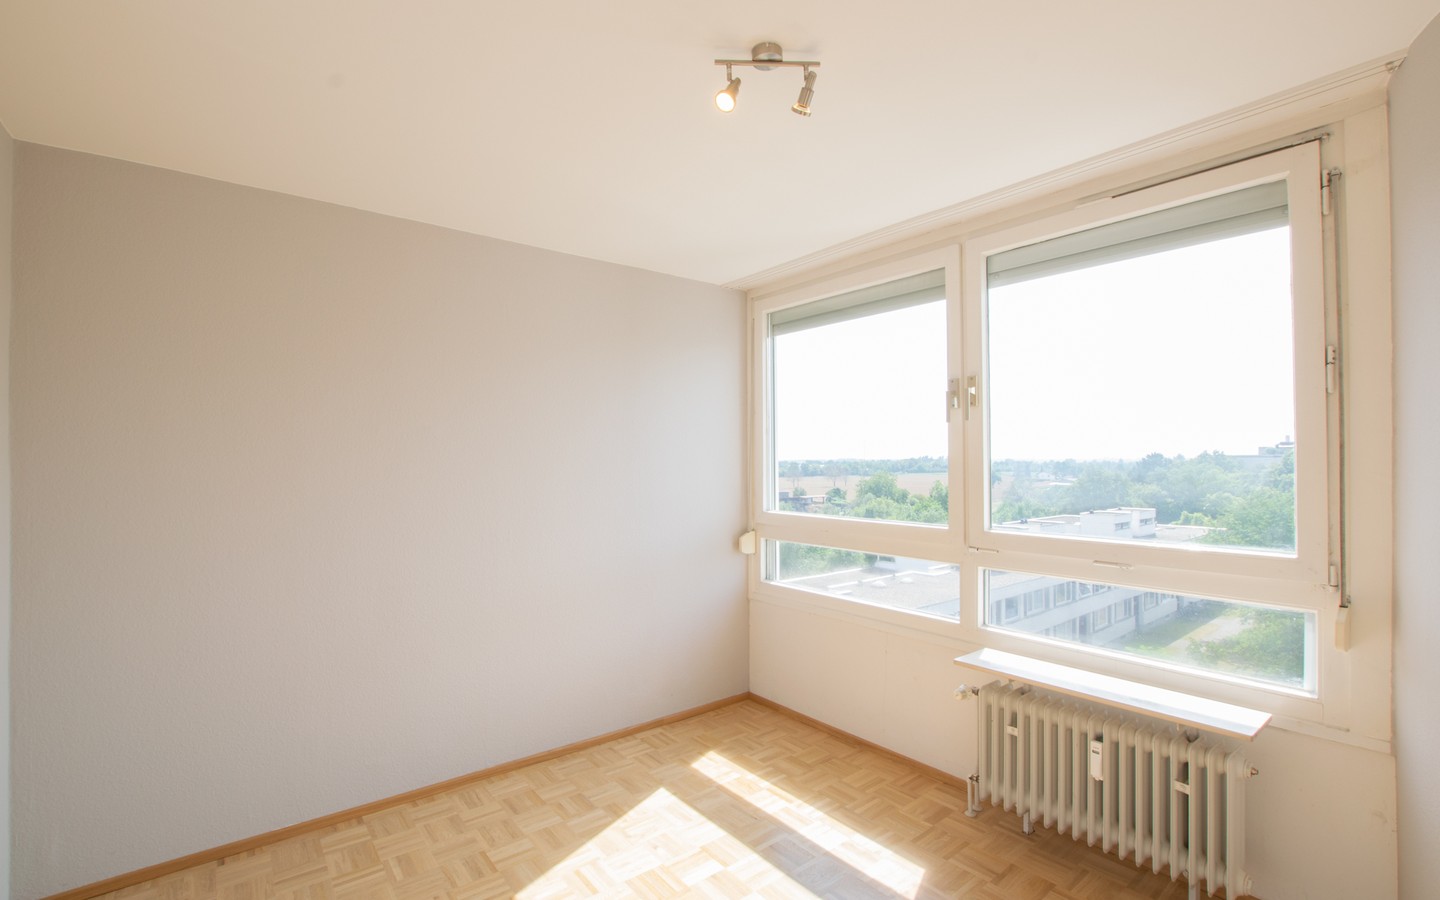 Zimmer 1 - Schöne Aussichten: Renovierte Maisonettewohnung mit Terrasse und tollem Ausblick!